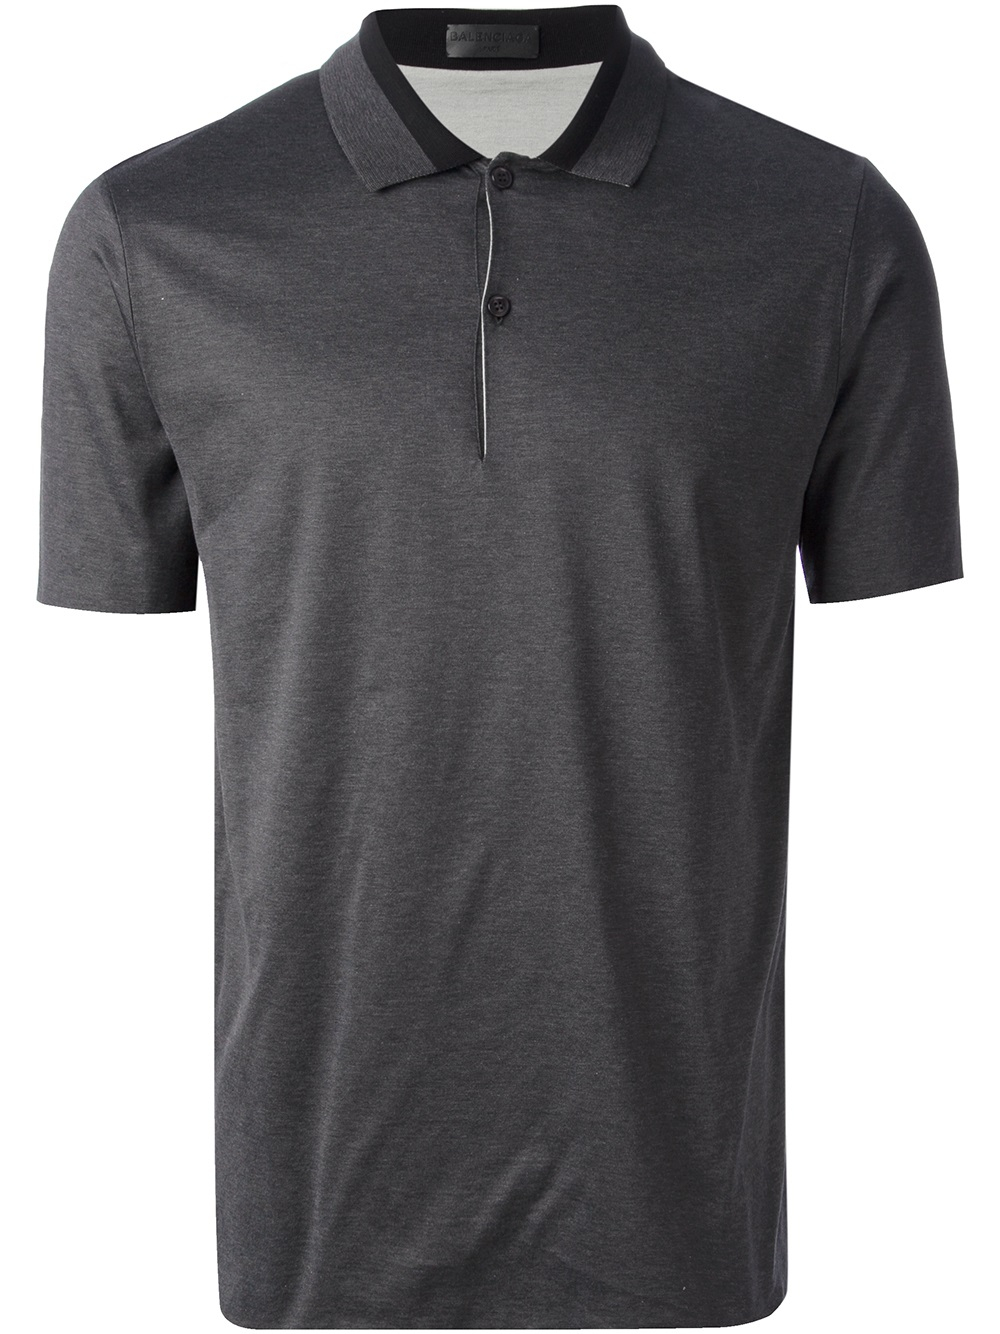 Balenciaga Classic Polo Shirt in Grey (Gray) for Men - Lyst